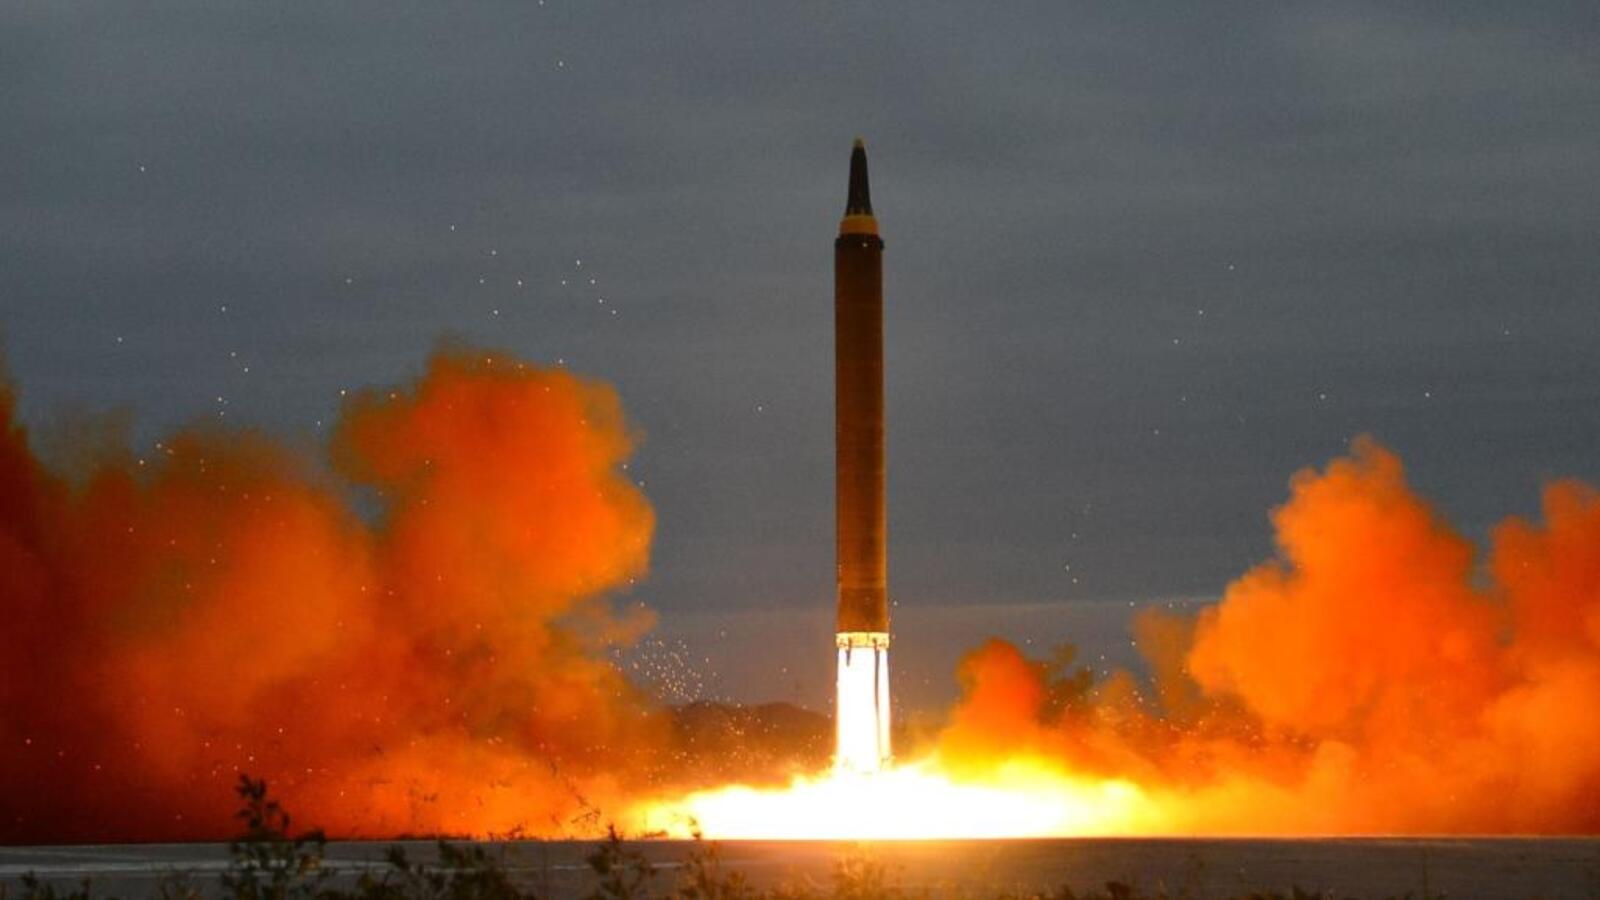 كوريا الشمالية توسع منشأة لتصنيع صواريخ يمكن أن تصل إلى أمريكا